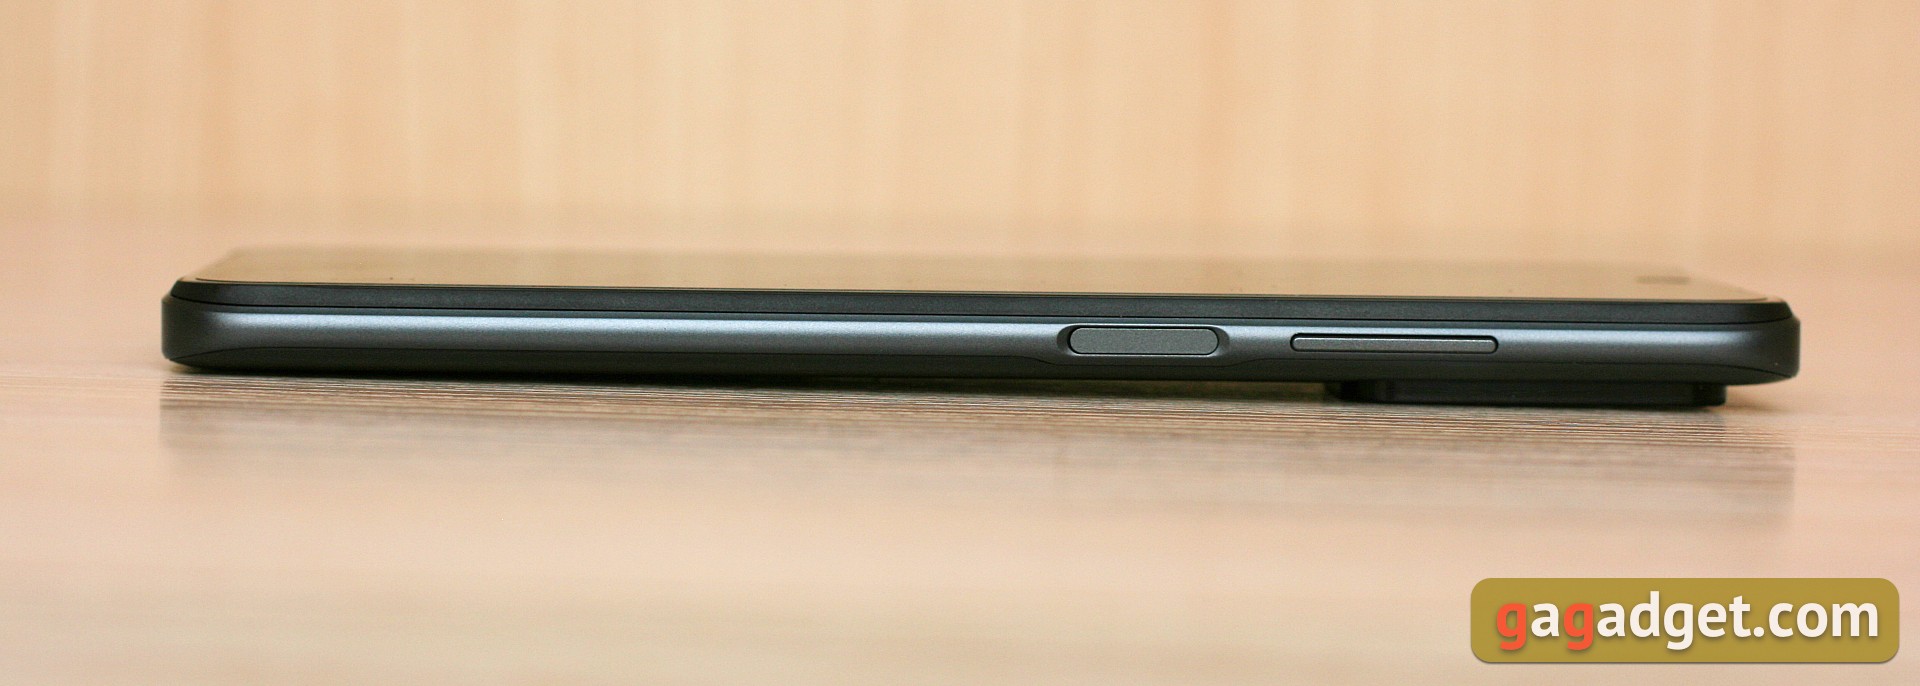 Análisis del Xiaomi Redmi 10: el legendario fabricante de presupuestos, ahora con una cámara de 50 megapíxeles-8